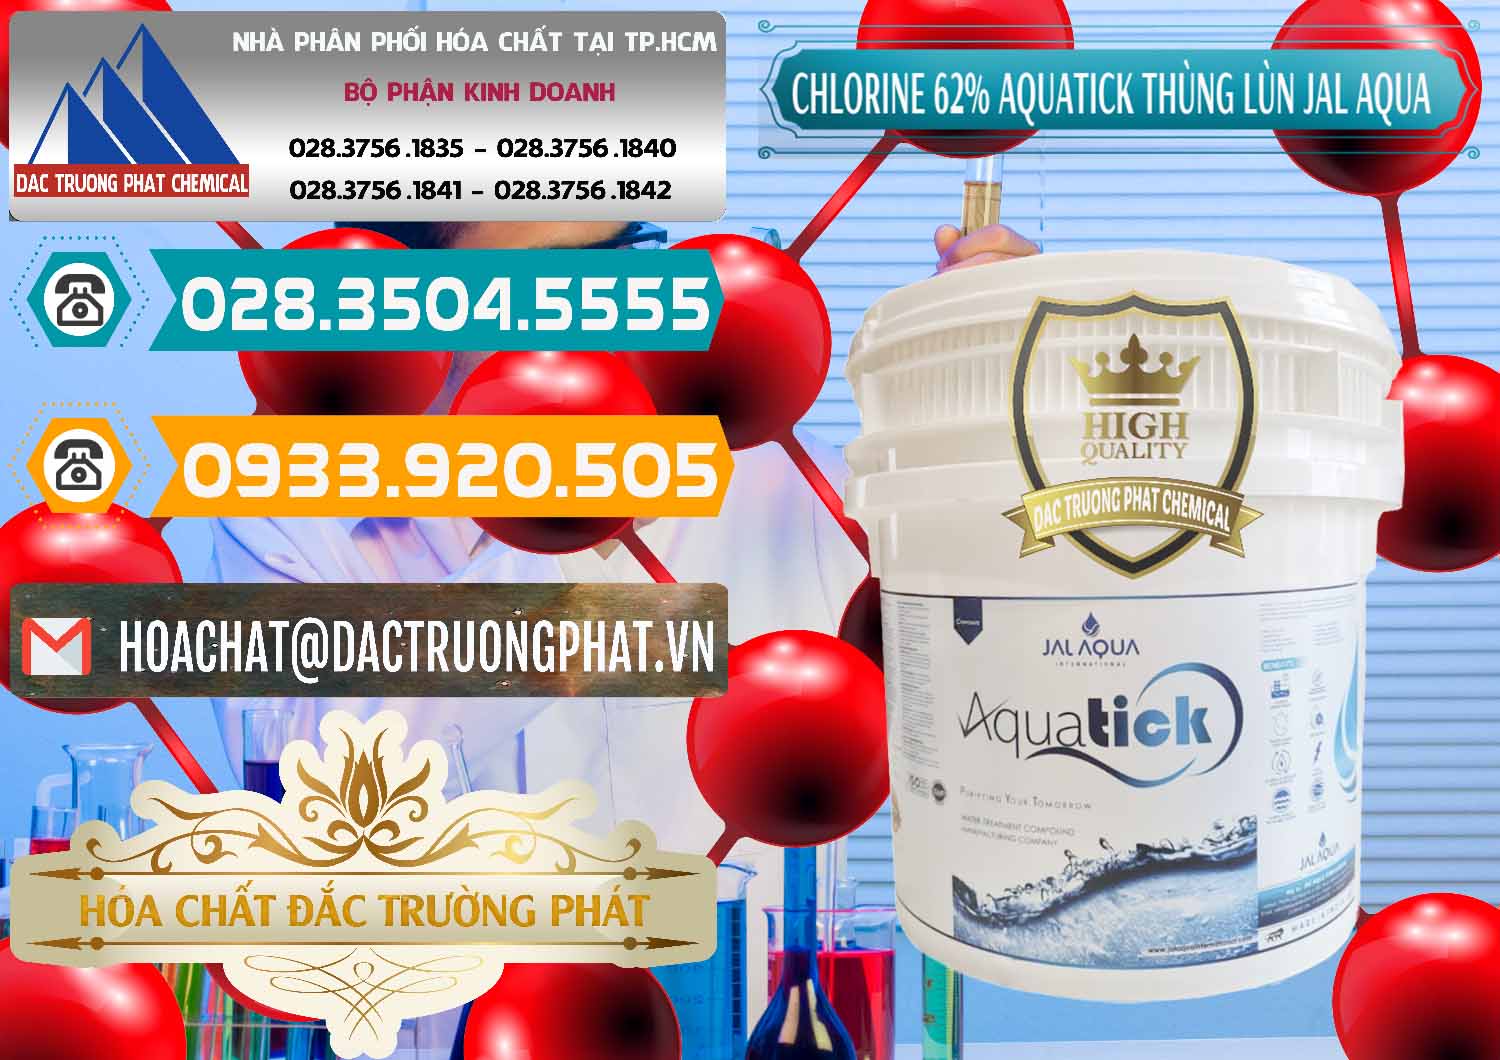 Cty nhập khẩu _ bán Chlorine – Clorin 62% Aquatick Thùng Lùn Jal Aqua Ấn Độ India - 0238 - Cty phân phối & bán hóa chất tại TP.HCM - congtyhoachat.vn